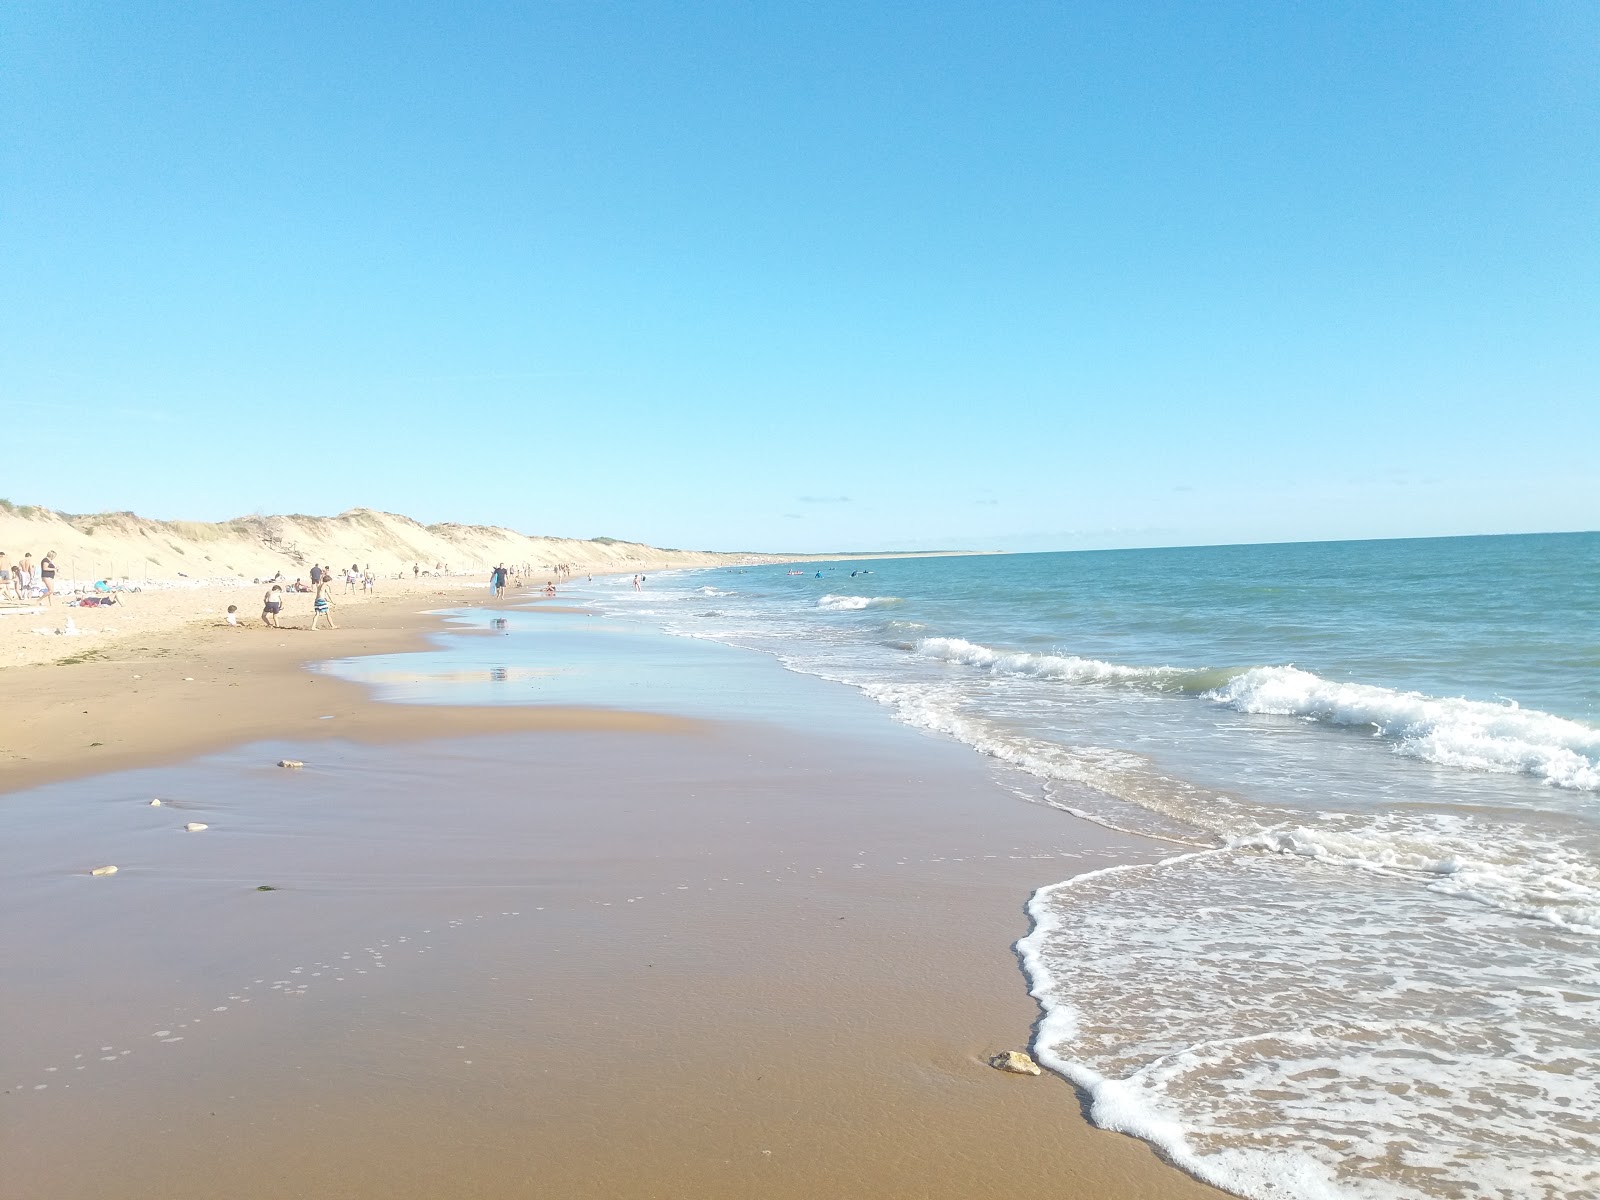 Zdjęcie Rocher beach z powierzchnią jasny piasek